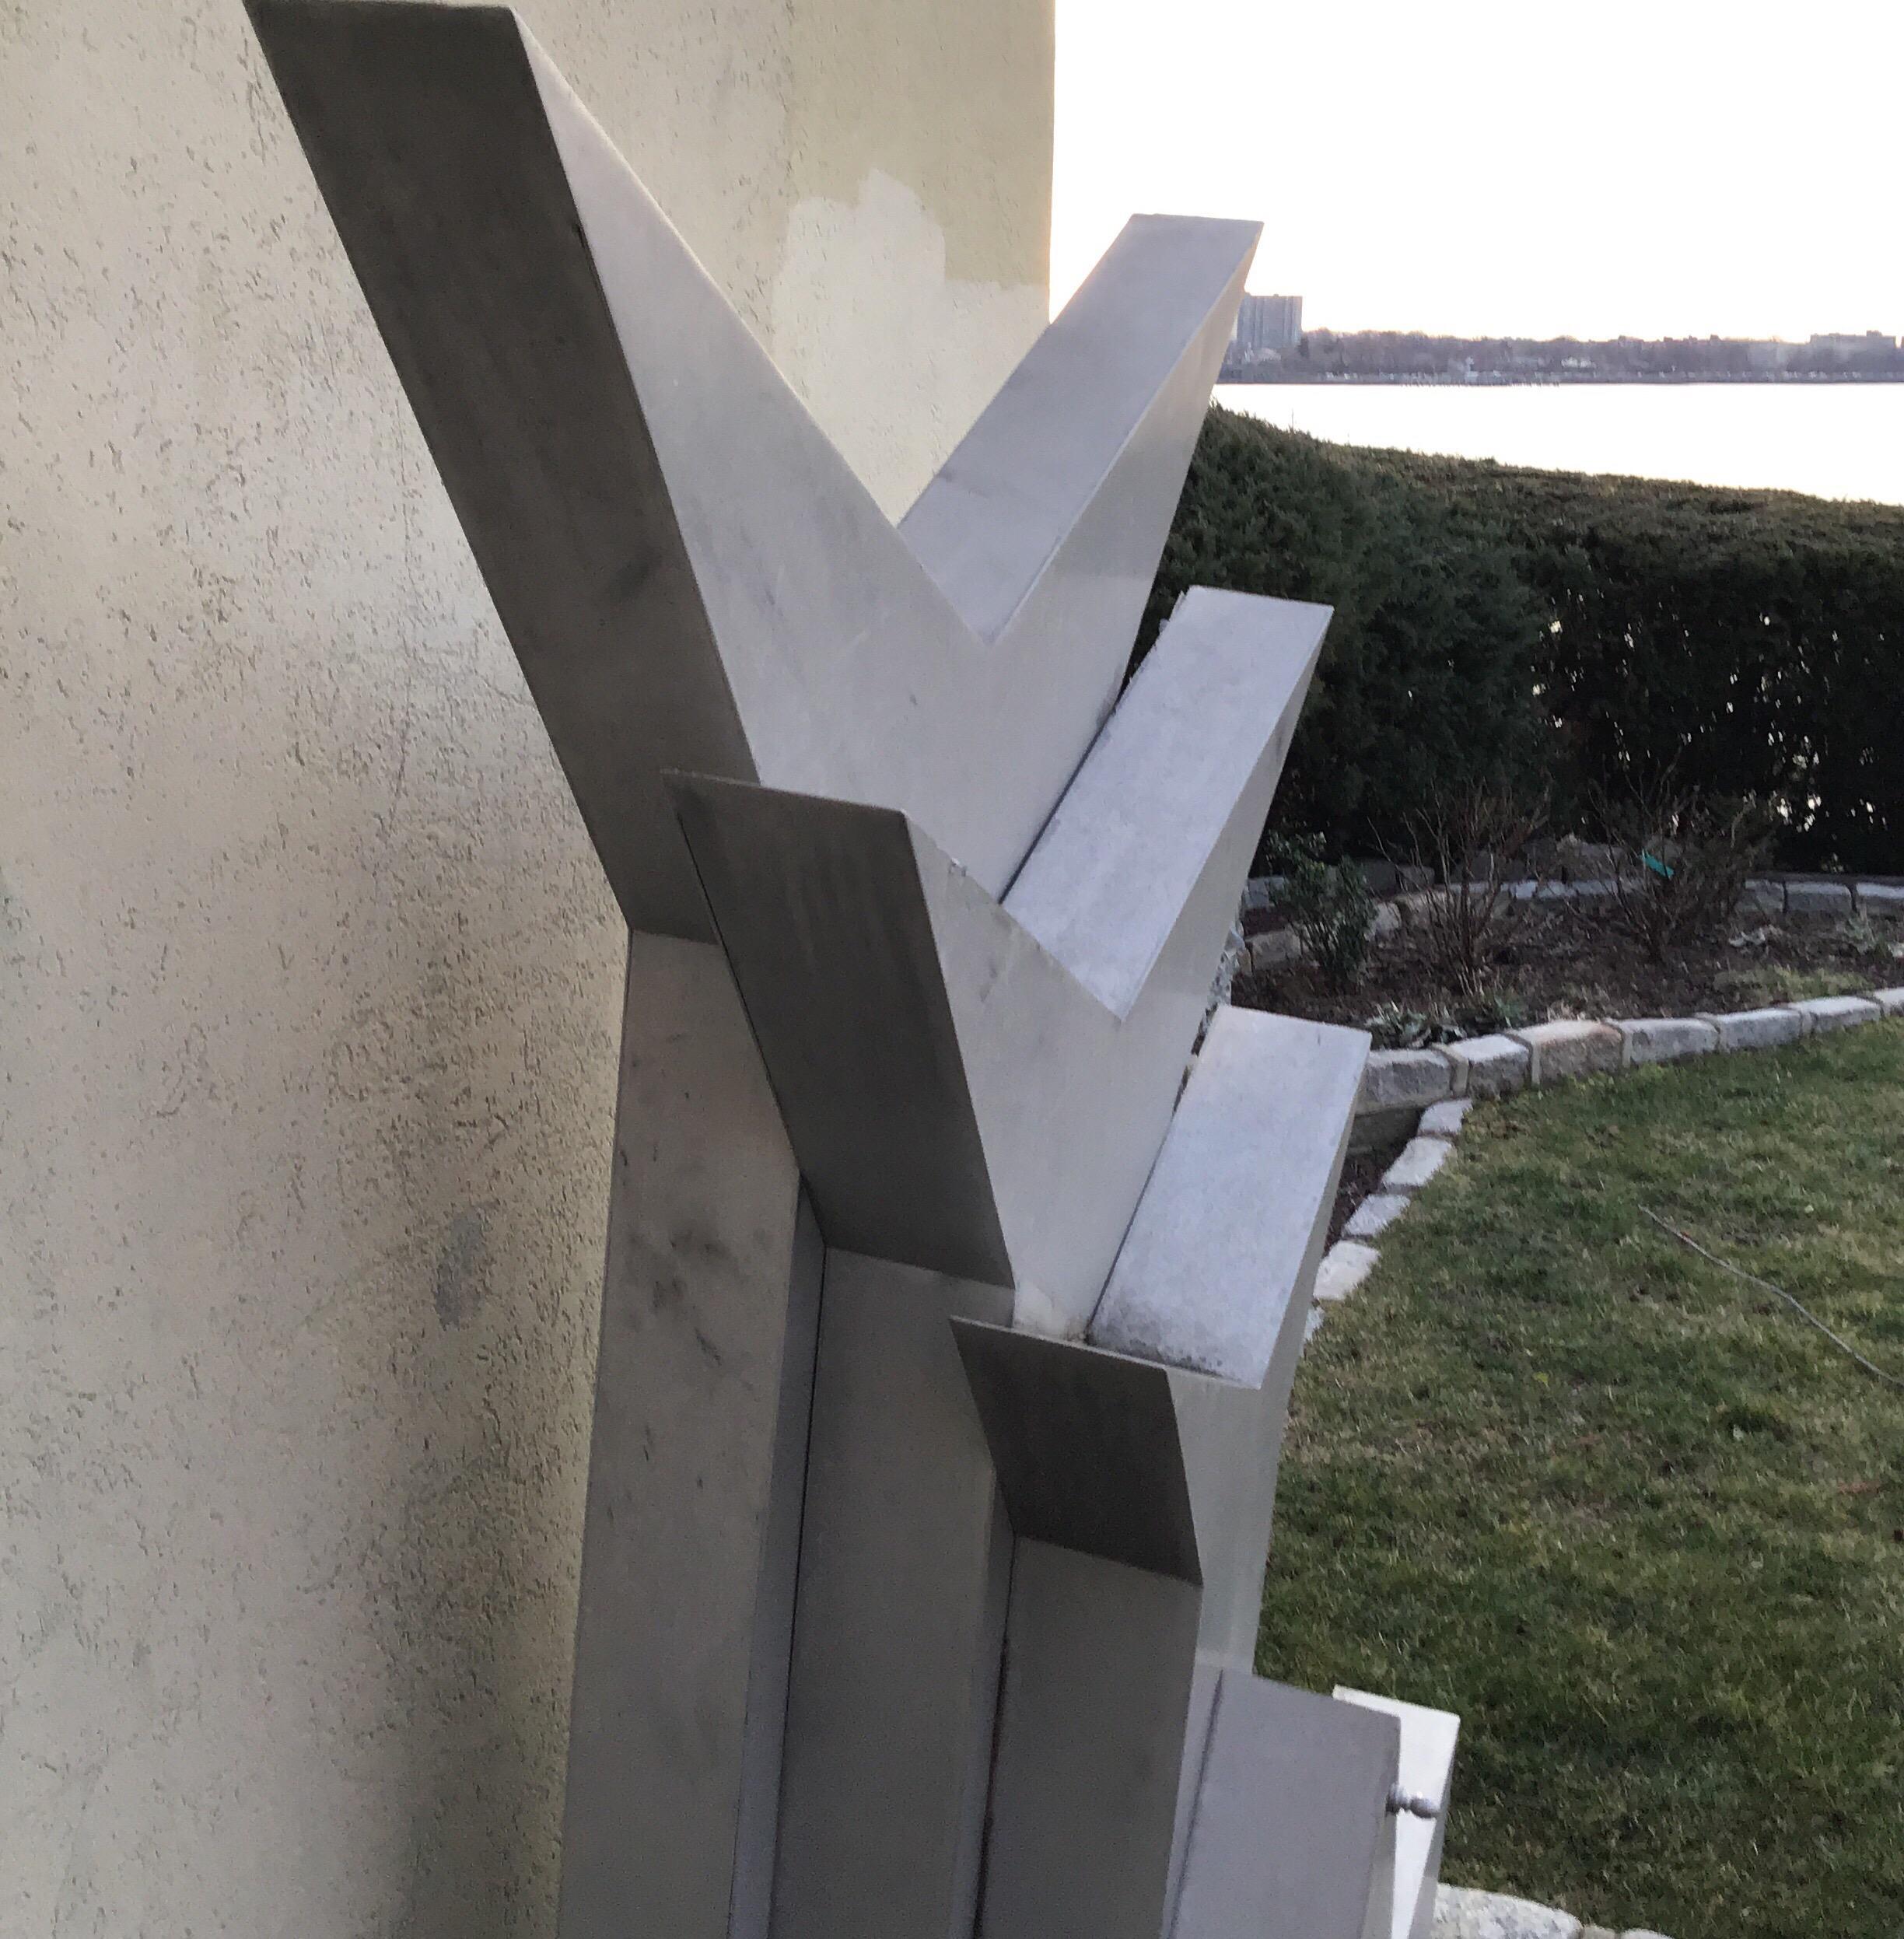 Aluminum 4-piece garden sculpture.